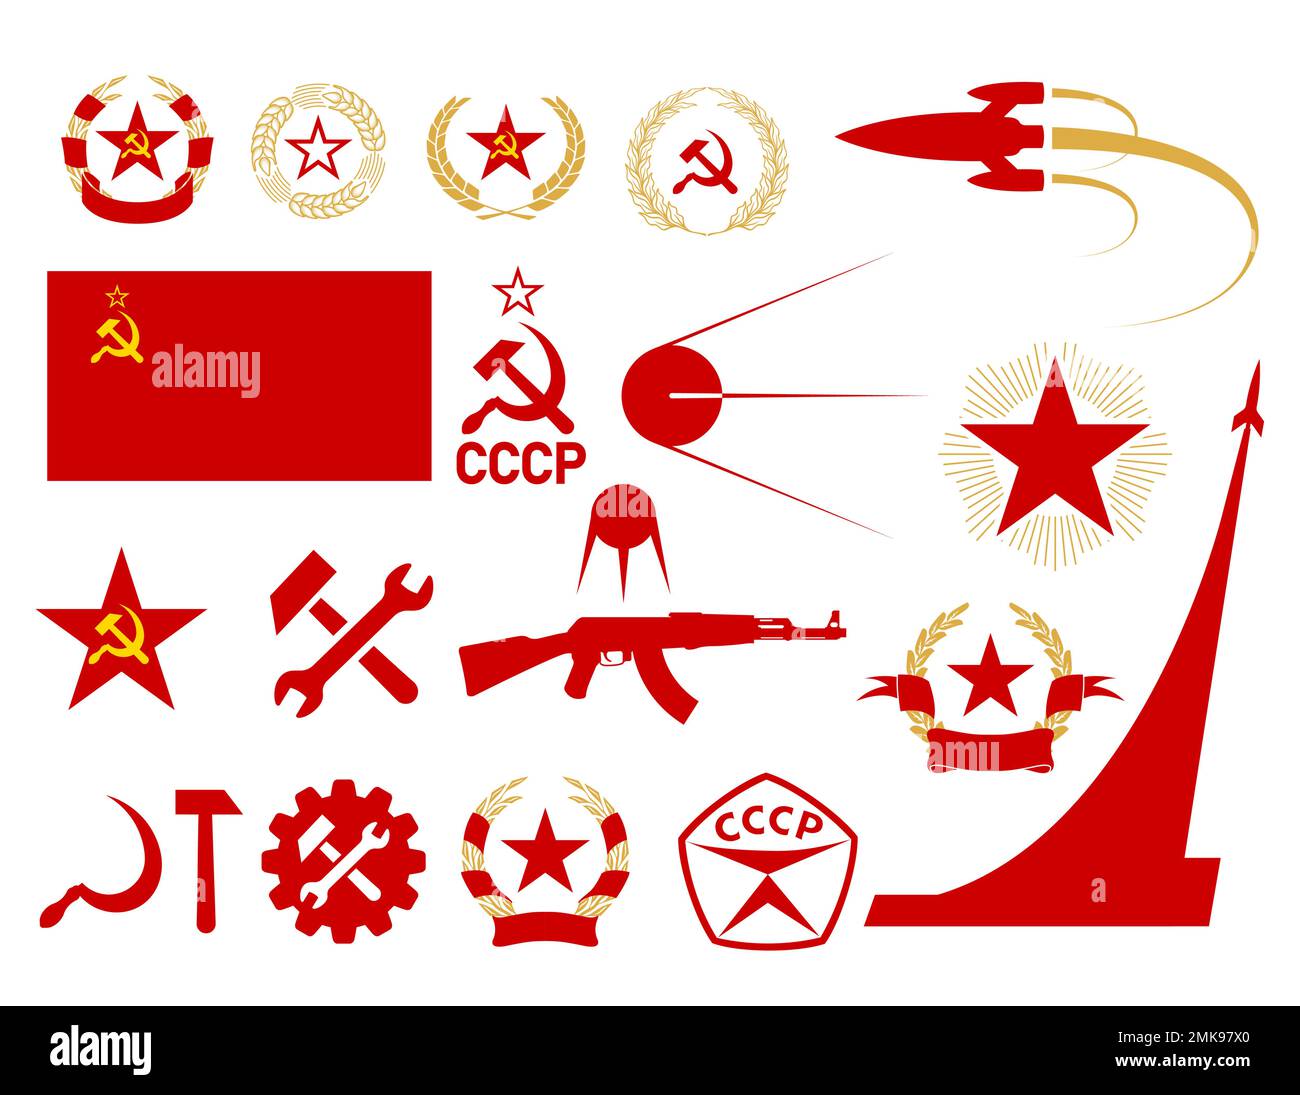 Socialist Heraldry Stock Illustrations – 51 Socialist Heraldry Stock  Illustrations, Vectors & Clipart - Dreamstime